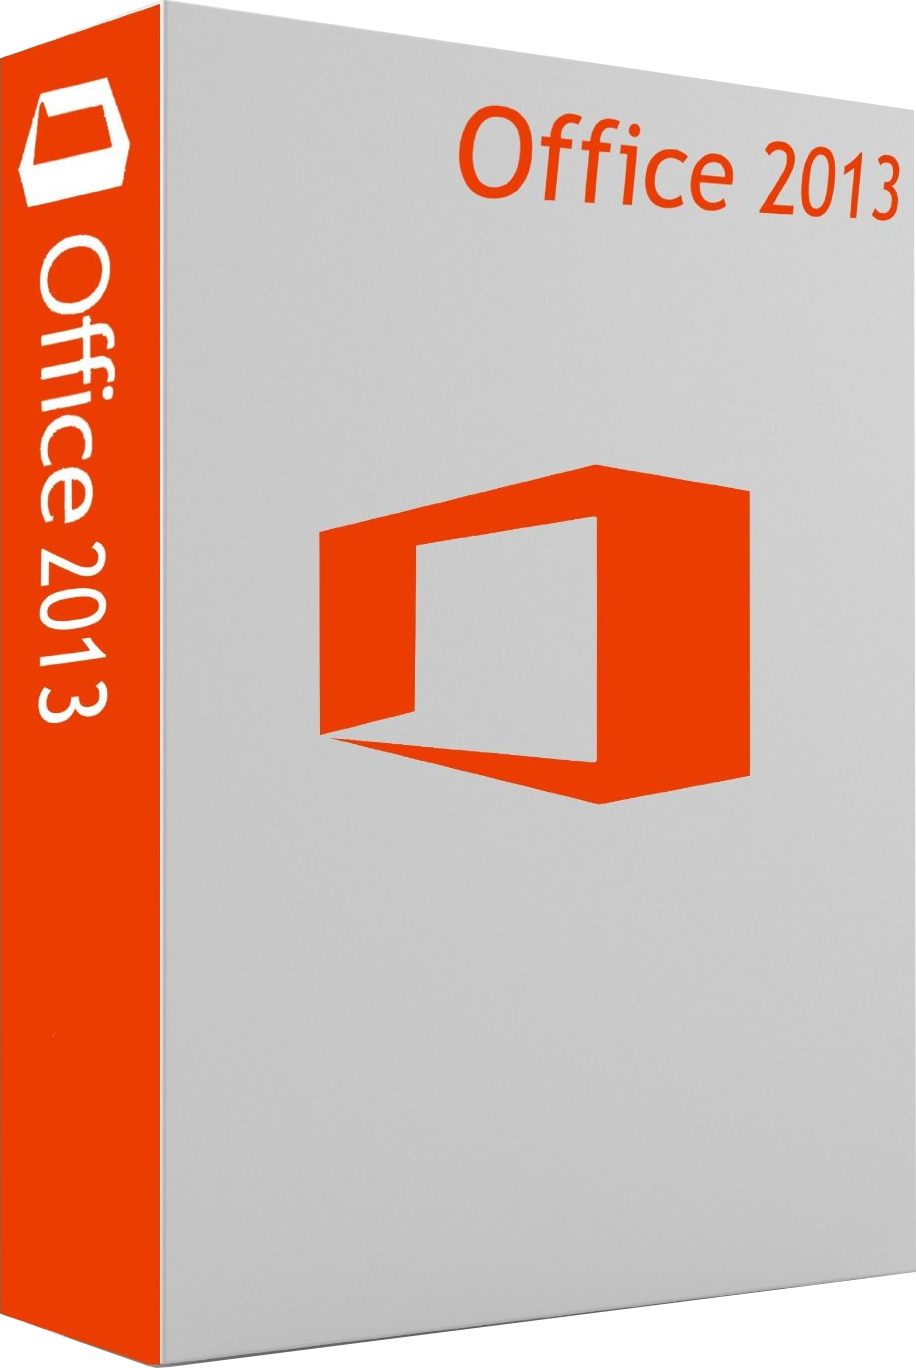 Microsoft Office 2013 Mac Release Date